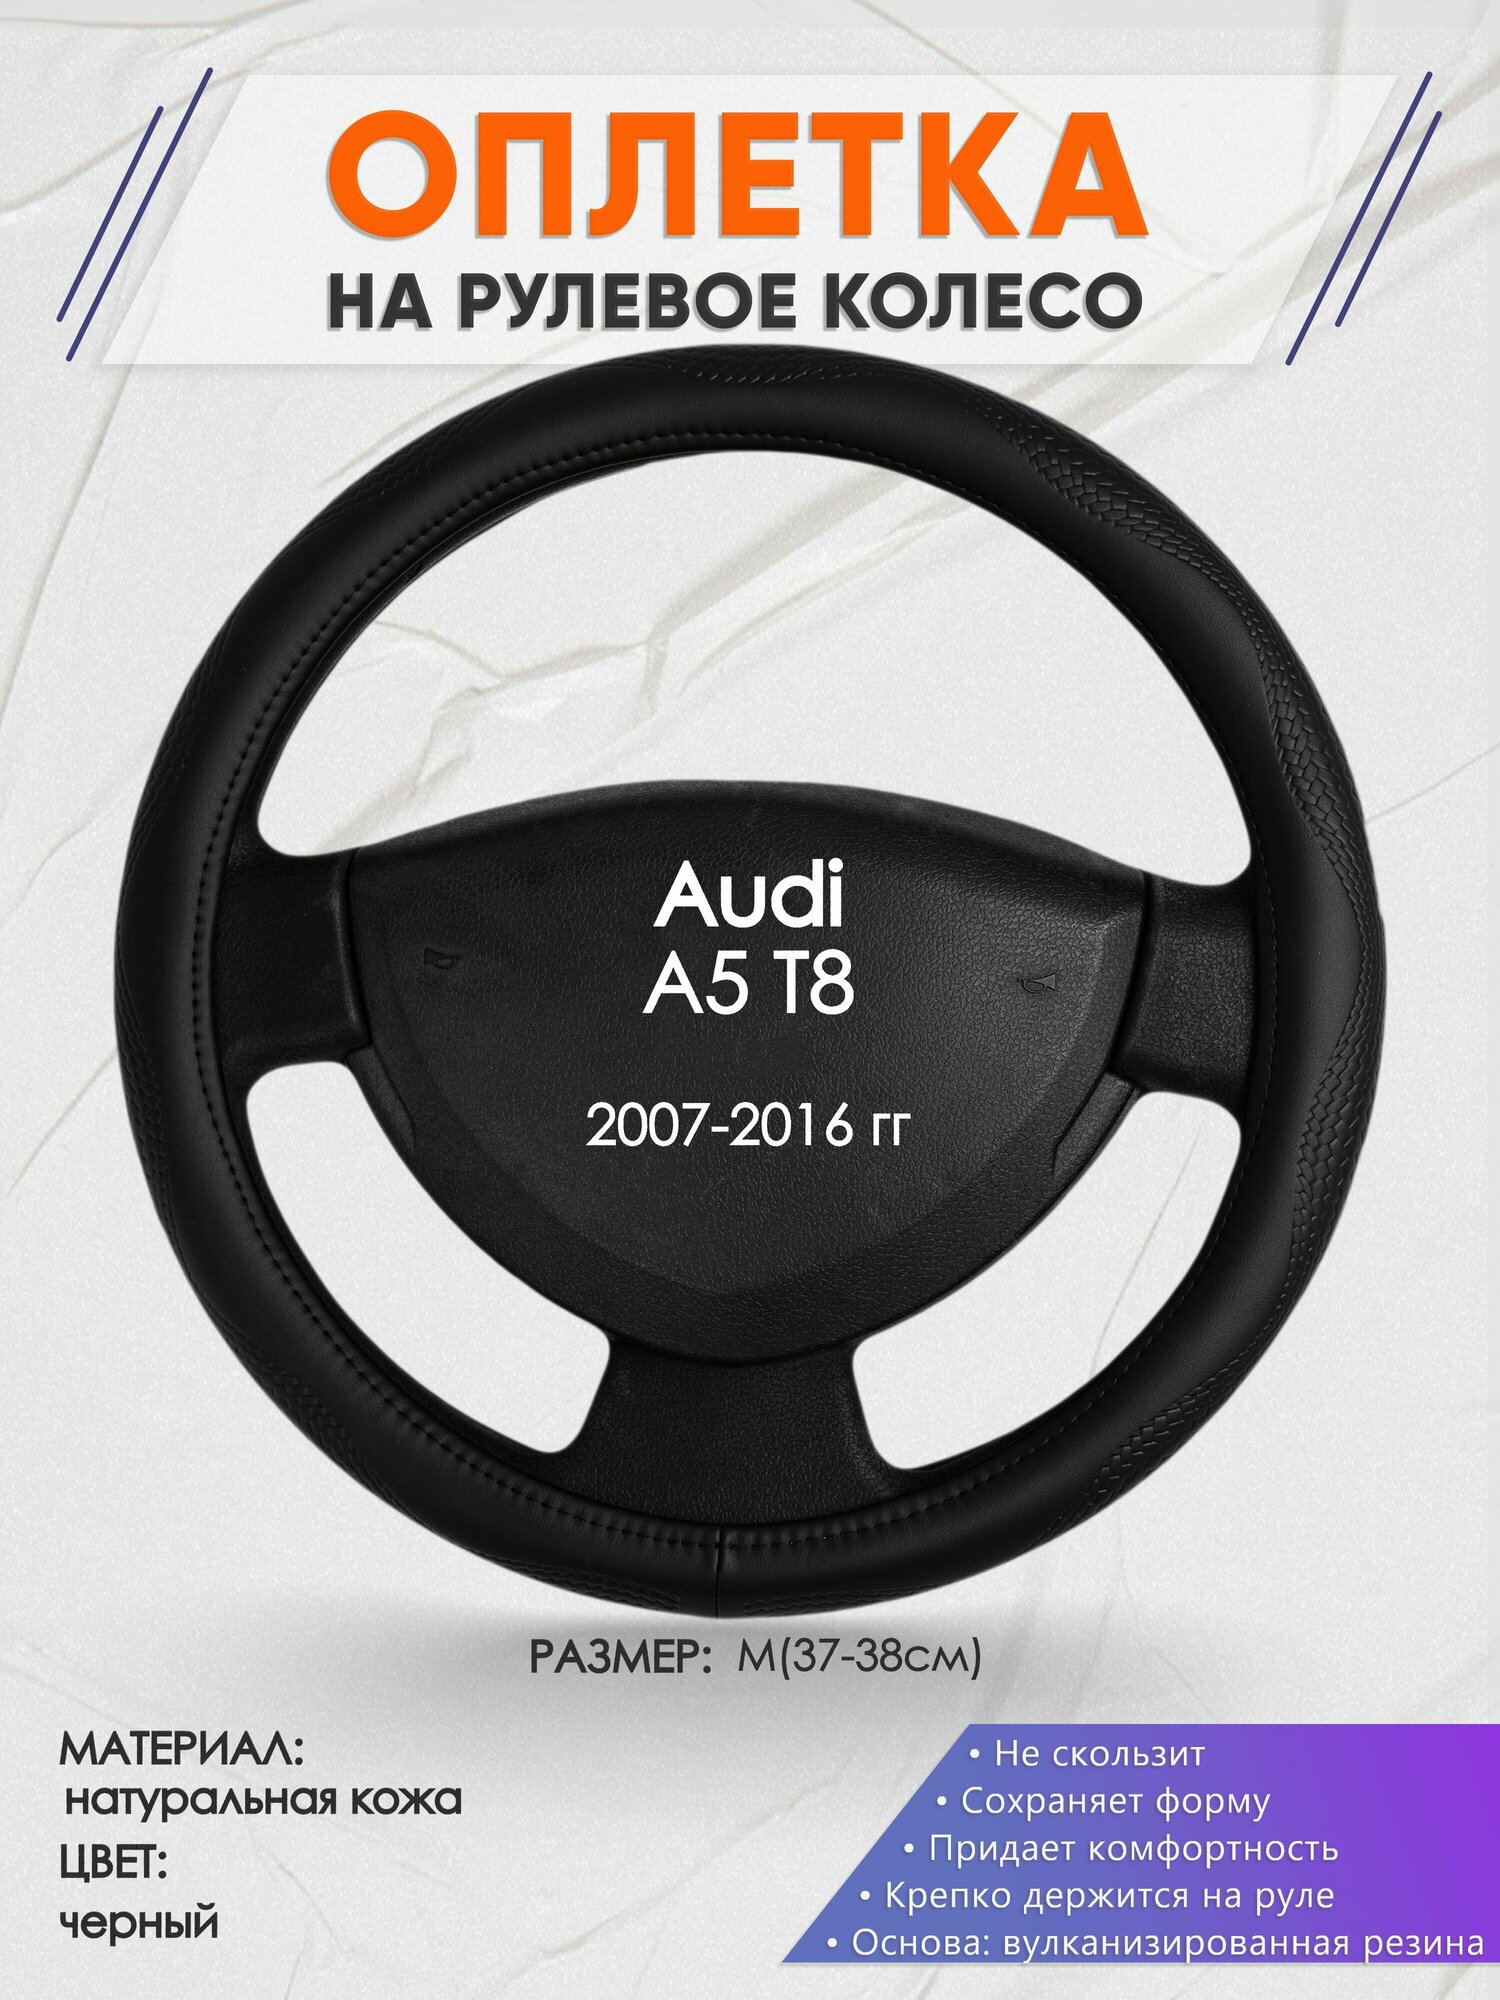 Оплетка на руль для Audi A5 T8(Ауди А4 т8) 2007-2016 M(37-38см) Натуральная кожа 31